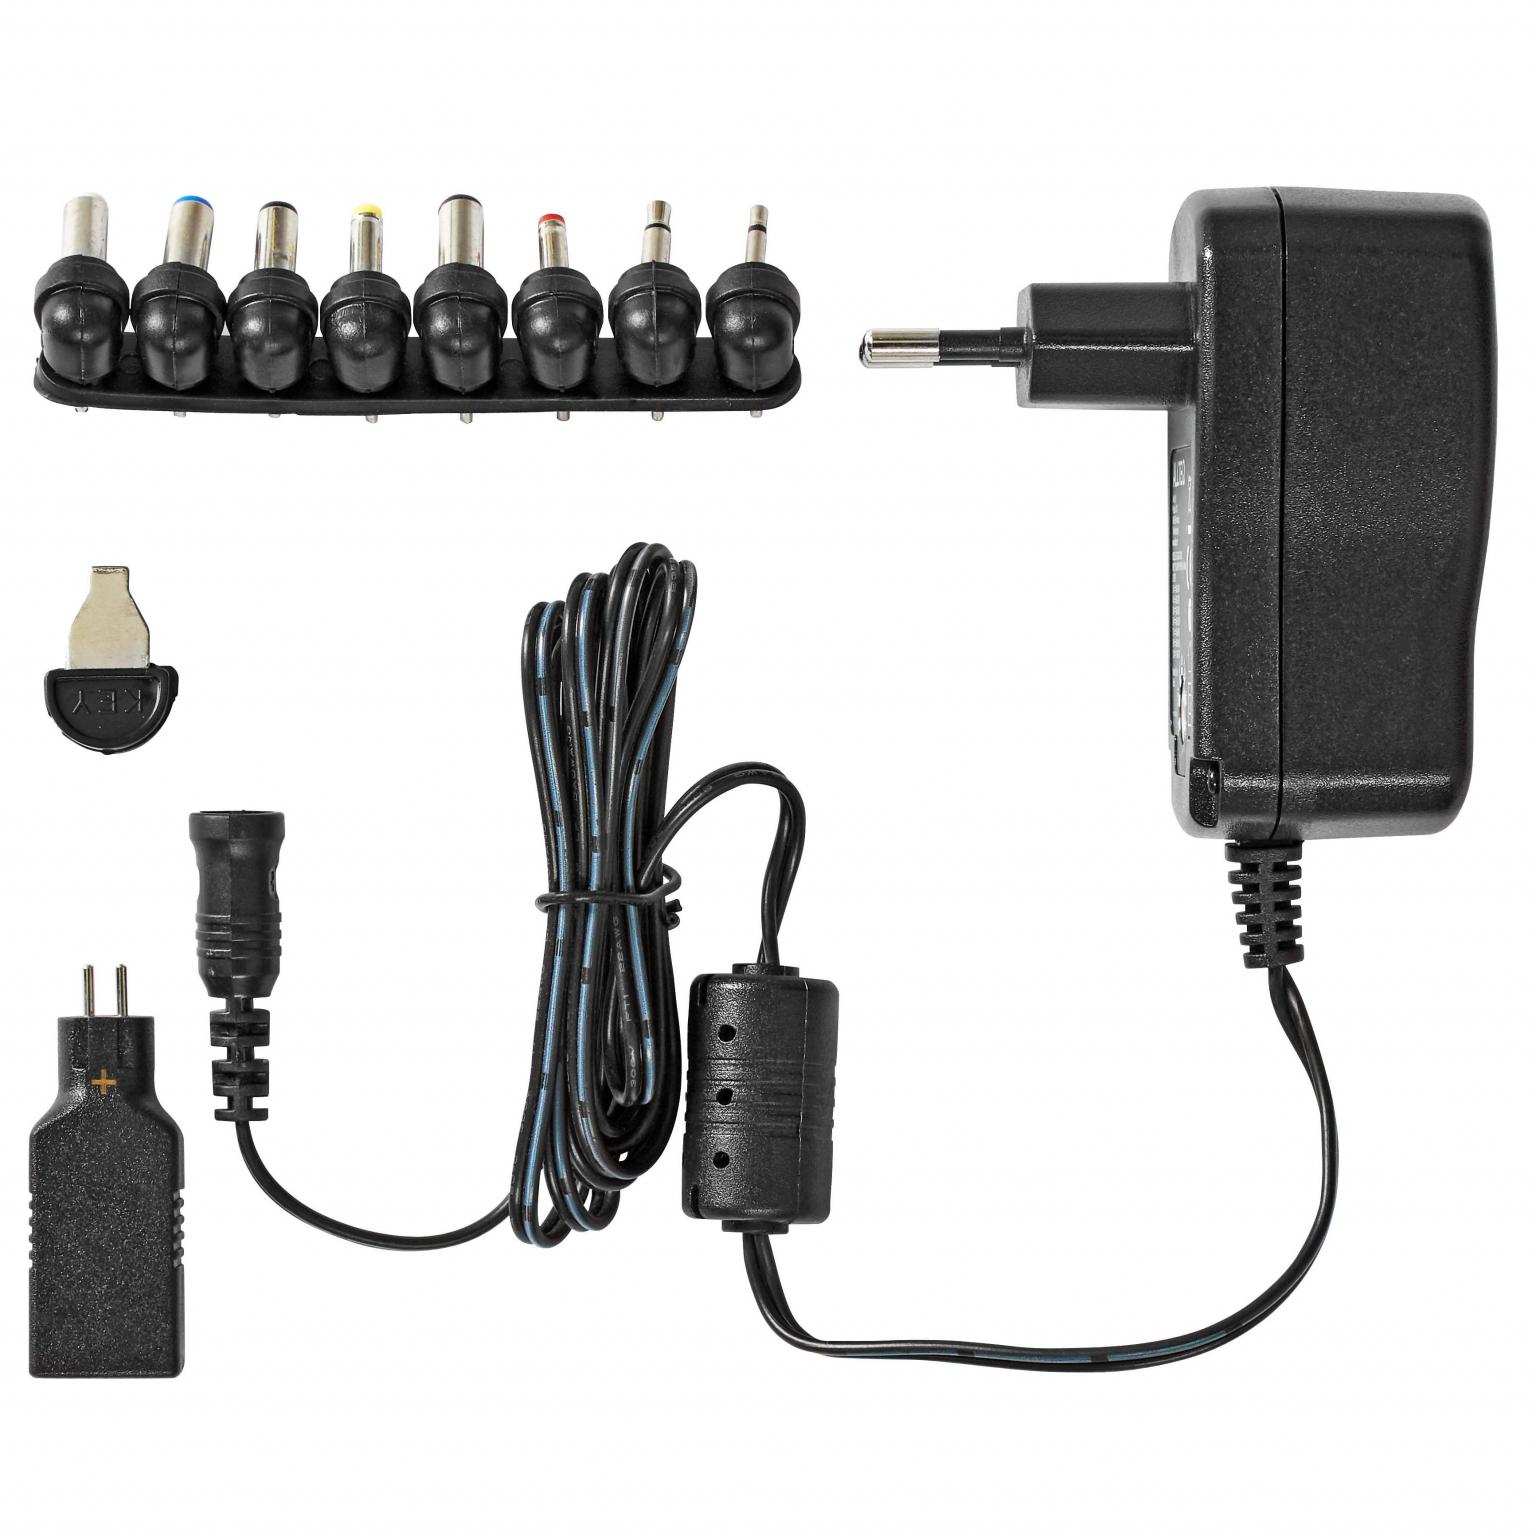 Product punch rekruut Universele Voedingsadapter - 3 - 12 volt AC/DC adapter, Max. 7.2 W en 0.6  A, Voedingsstekkers: 9 stuks, Ingangsvoltage: 100 - 240 V AC, 50/60 Hz,  Uitgangsvoltage: 3 - 12 V DC